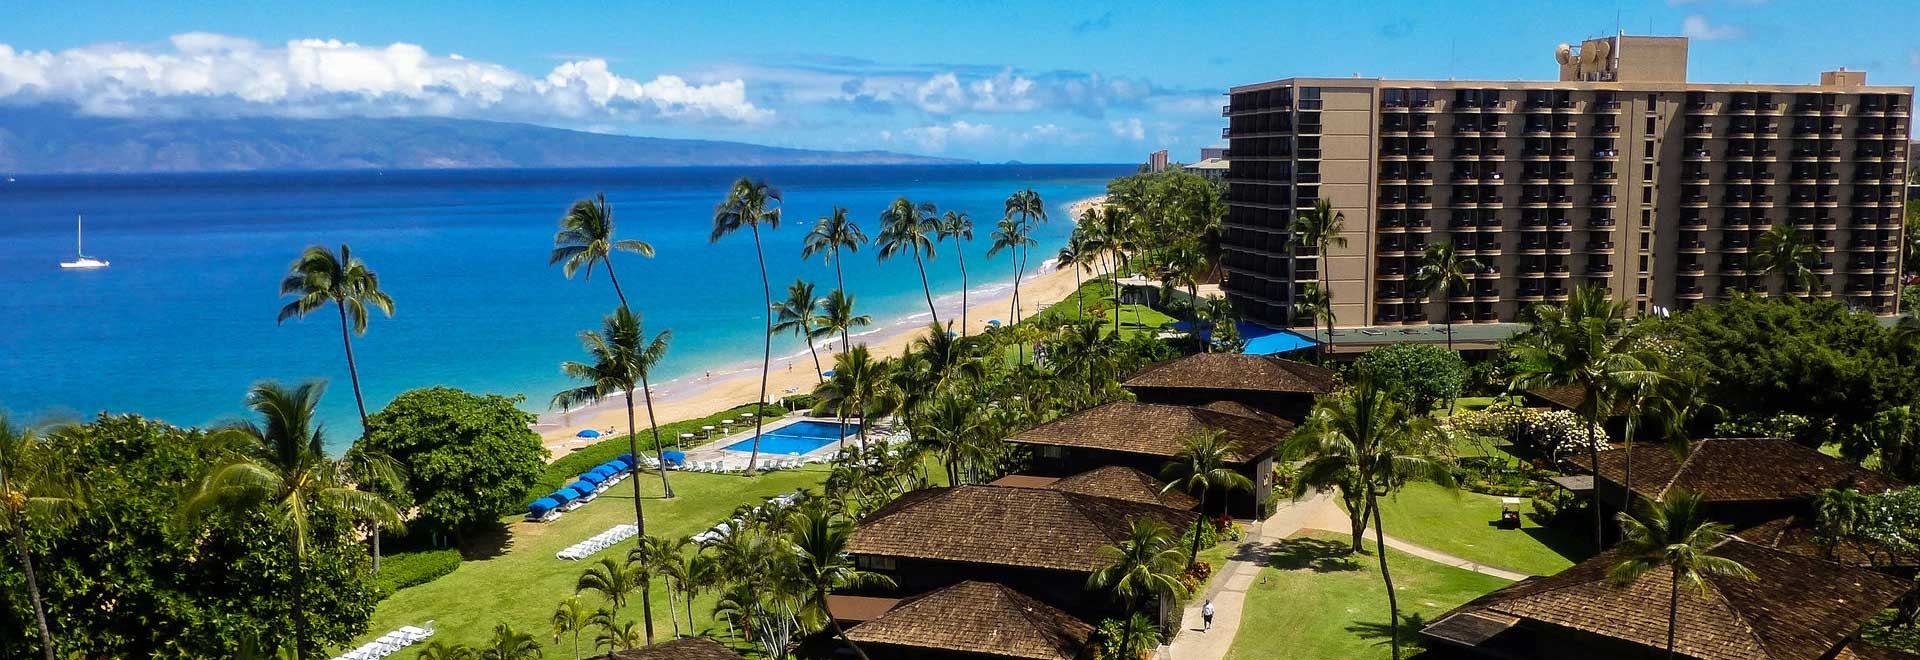 Royal Lahaina Resort, Hawaii - Book. Travel. Play.